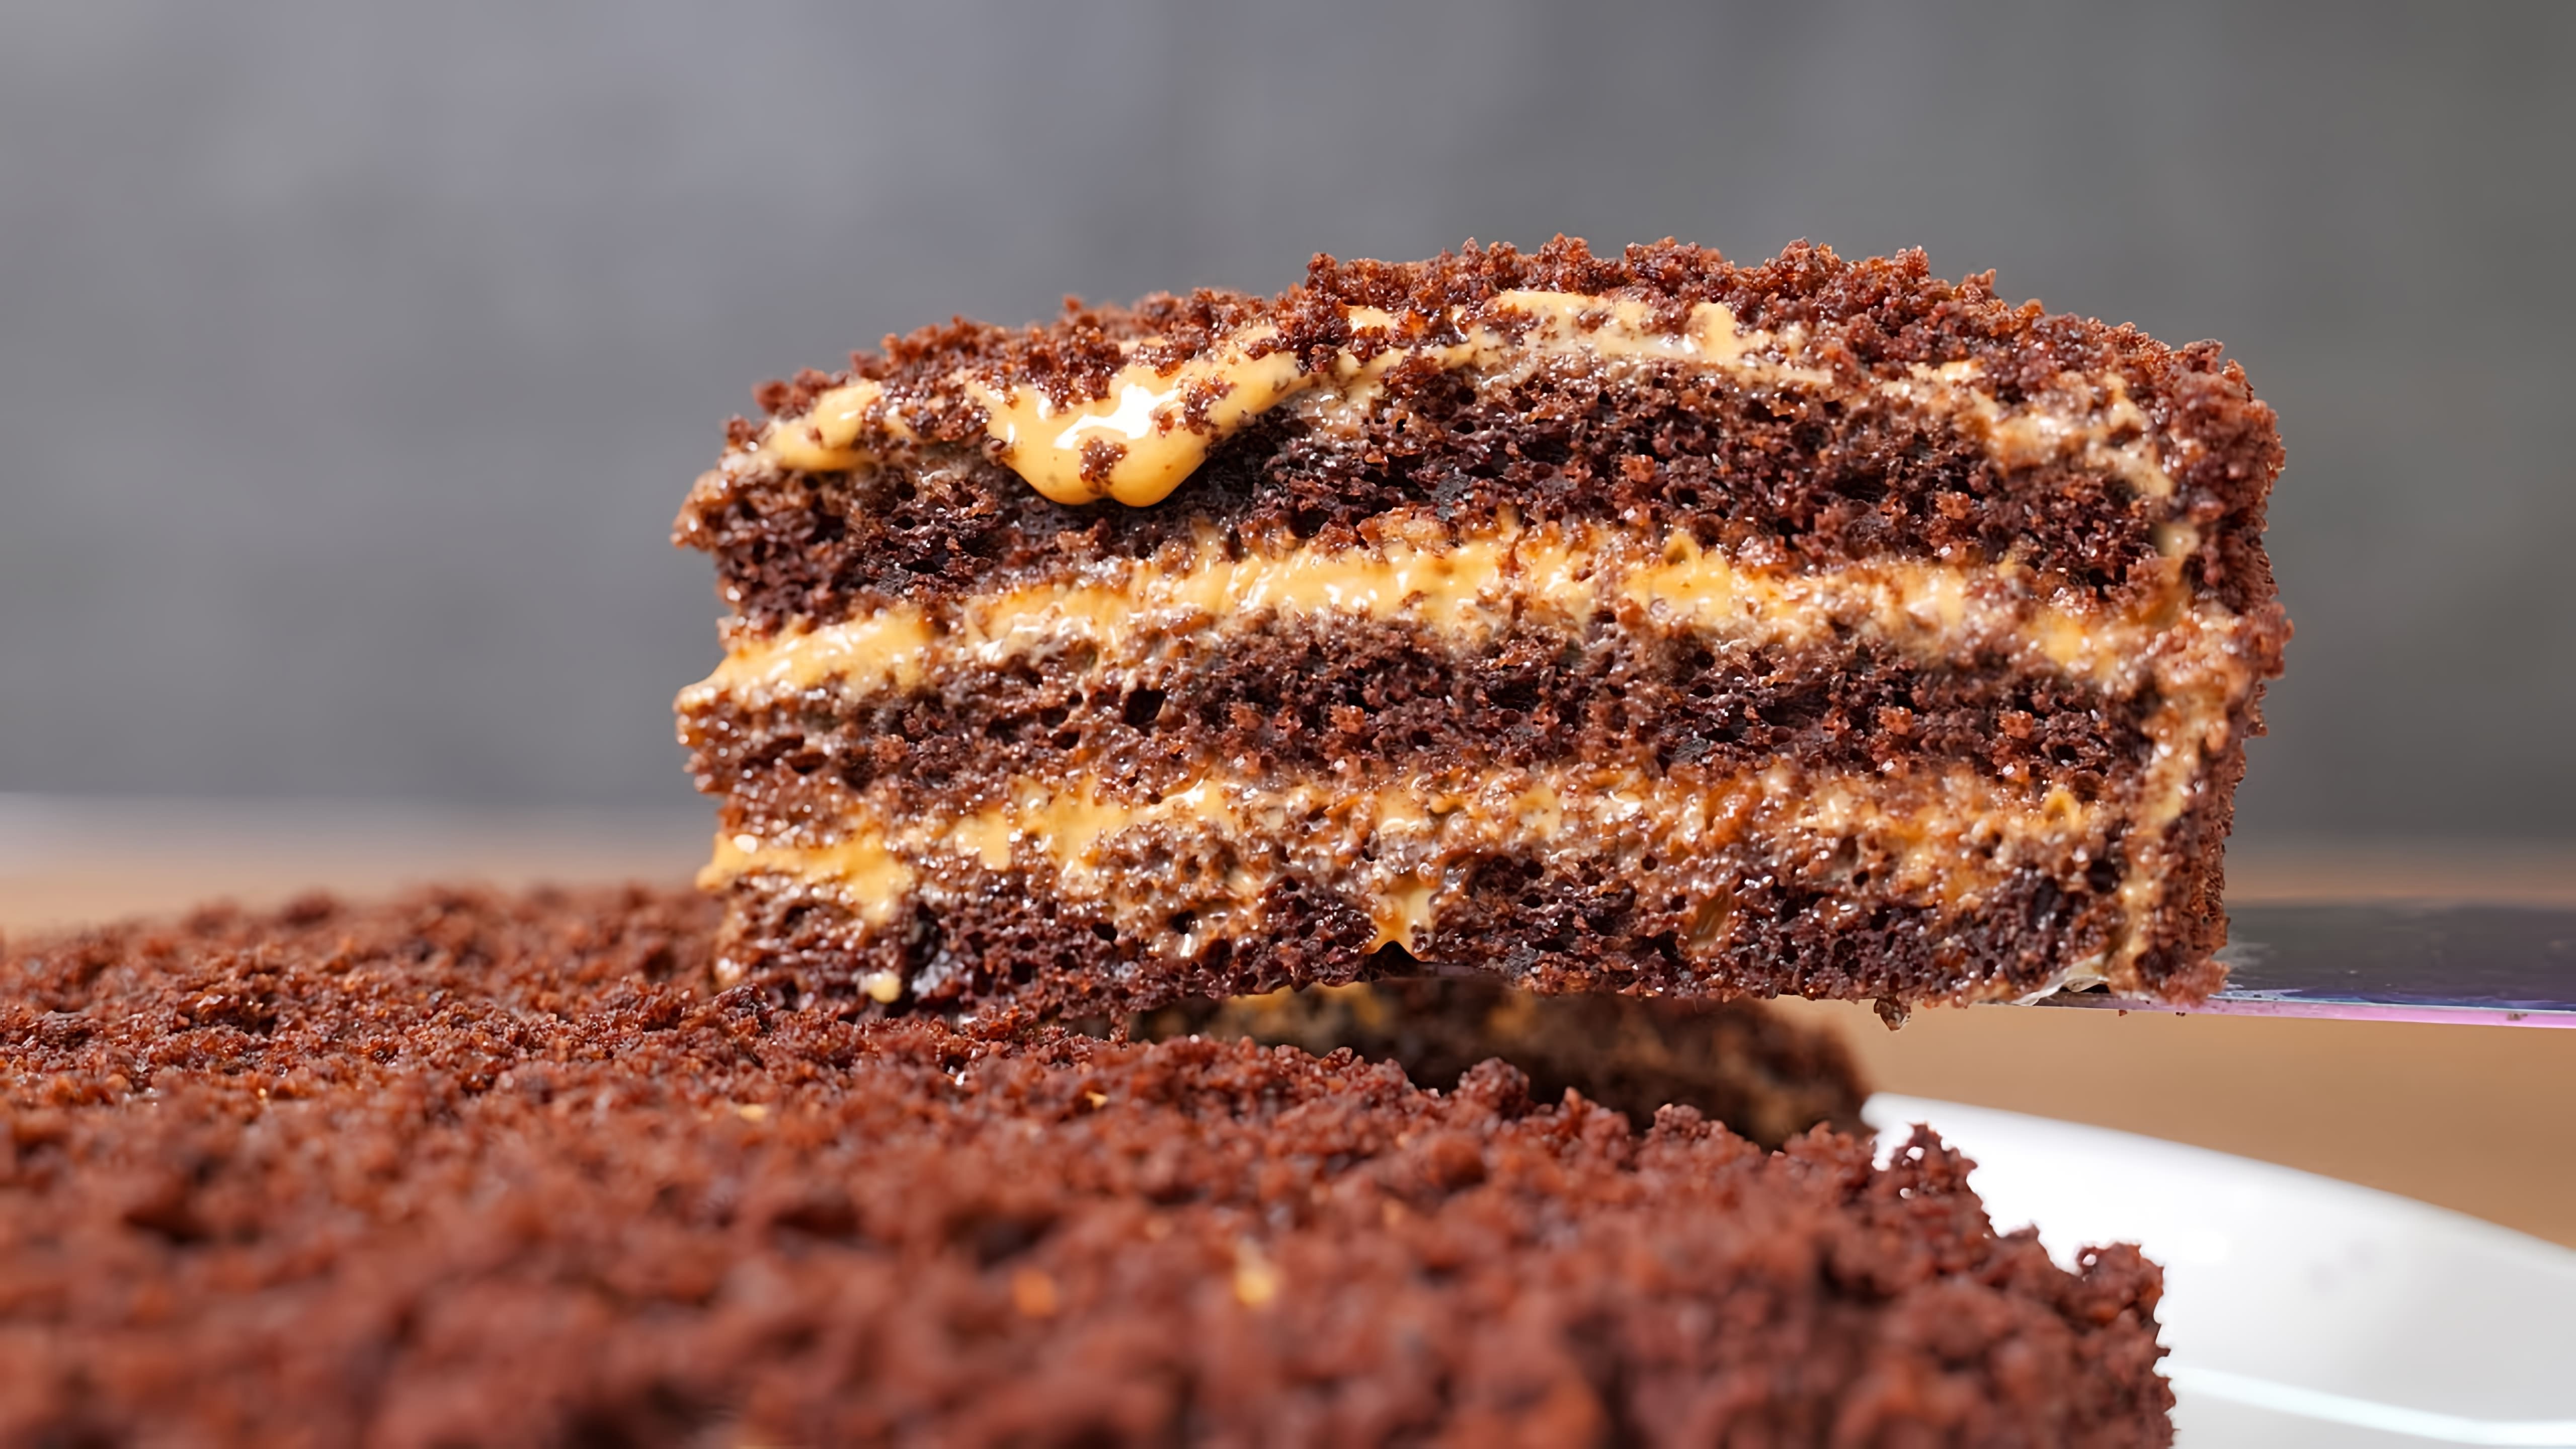 В этом видео демонстрируется рецепт приготовления домашнего шоколадного торта без использования миксера и весов